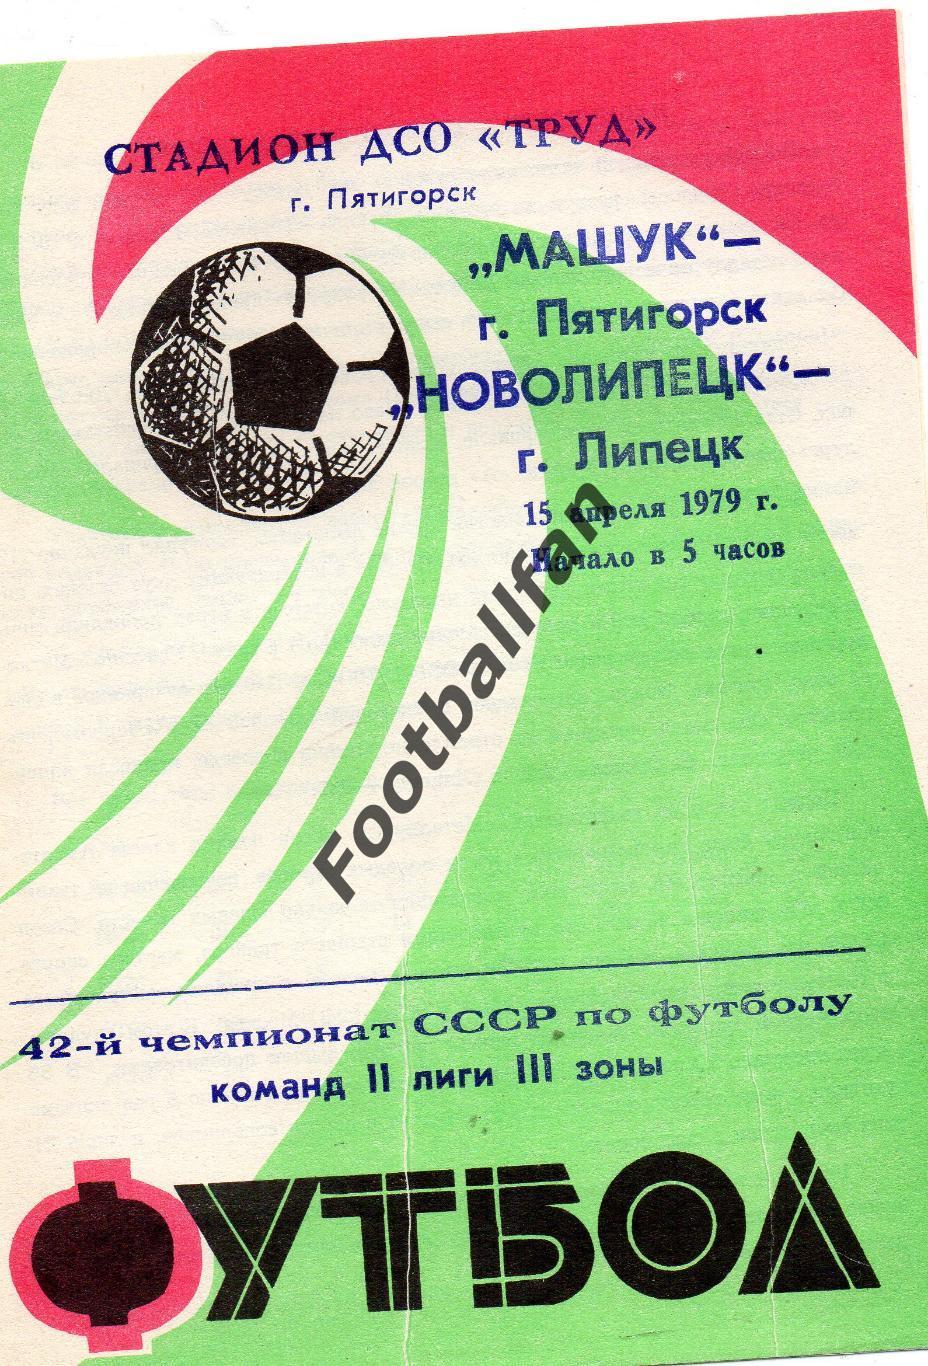 Машук Пятигорск - Новолипецк Липецк 15.04.1979